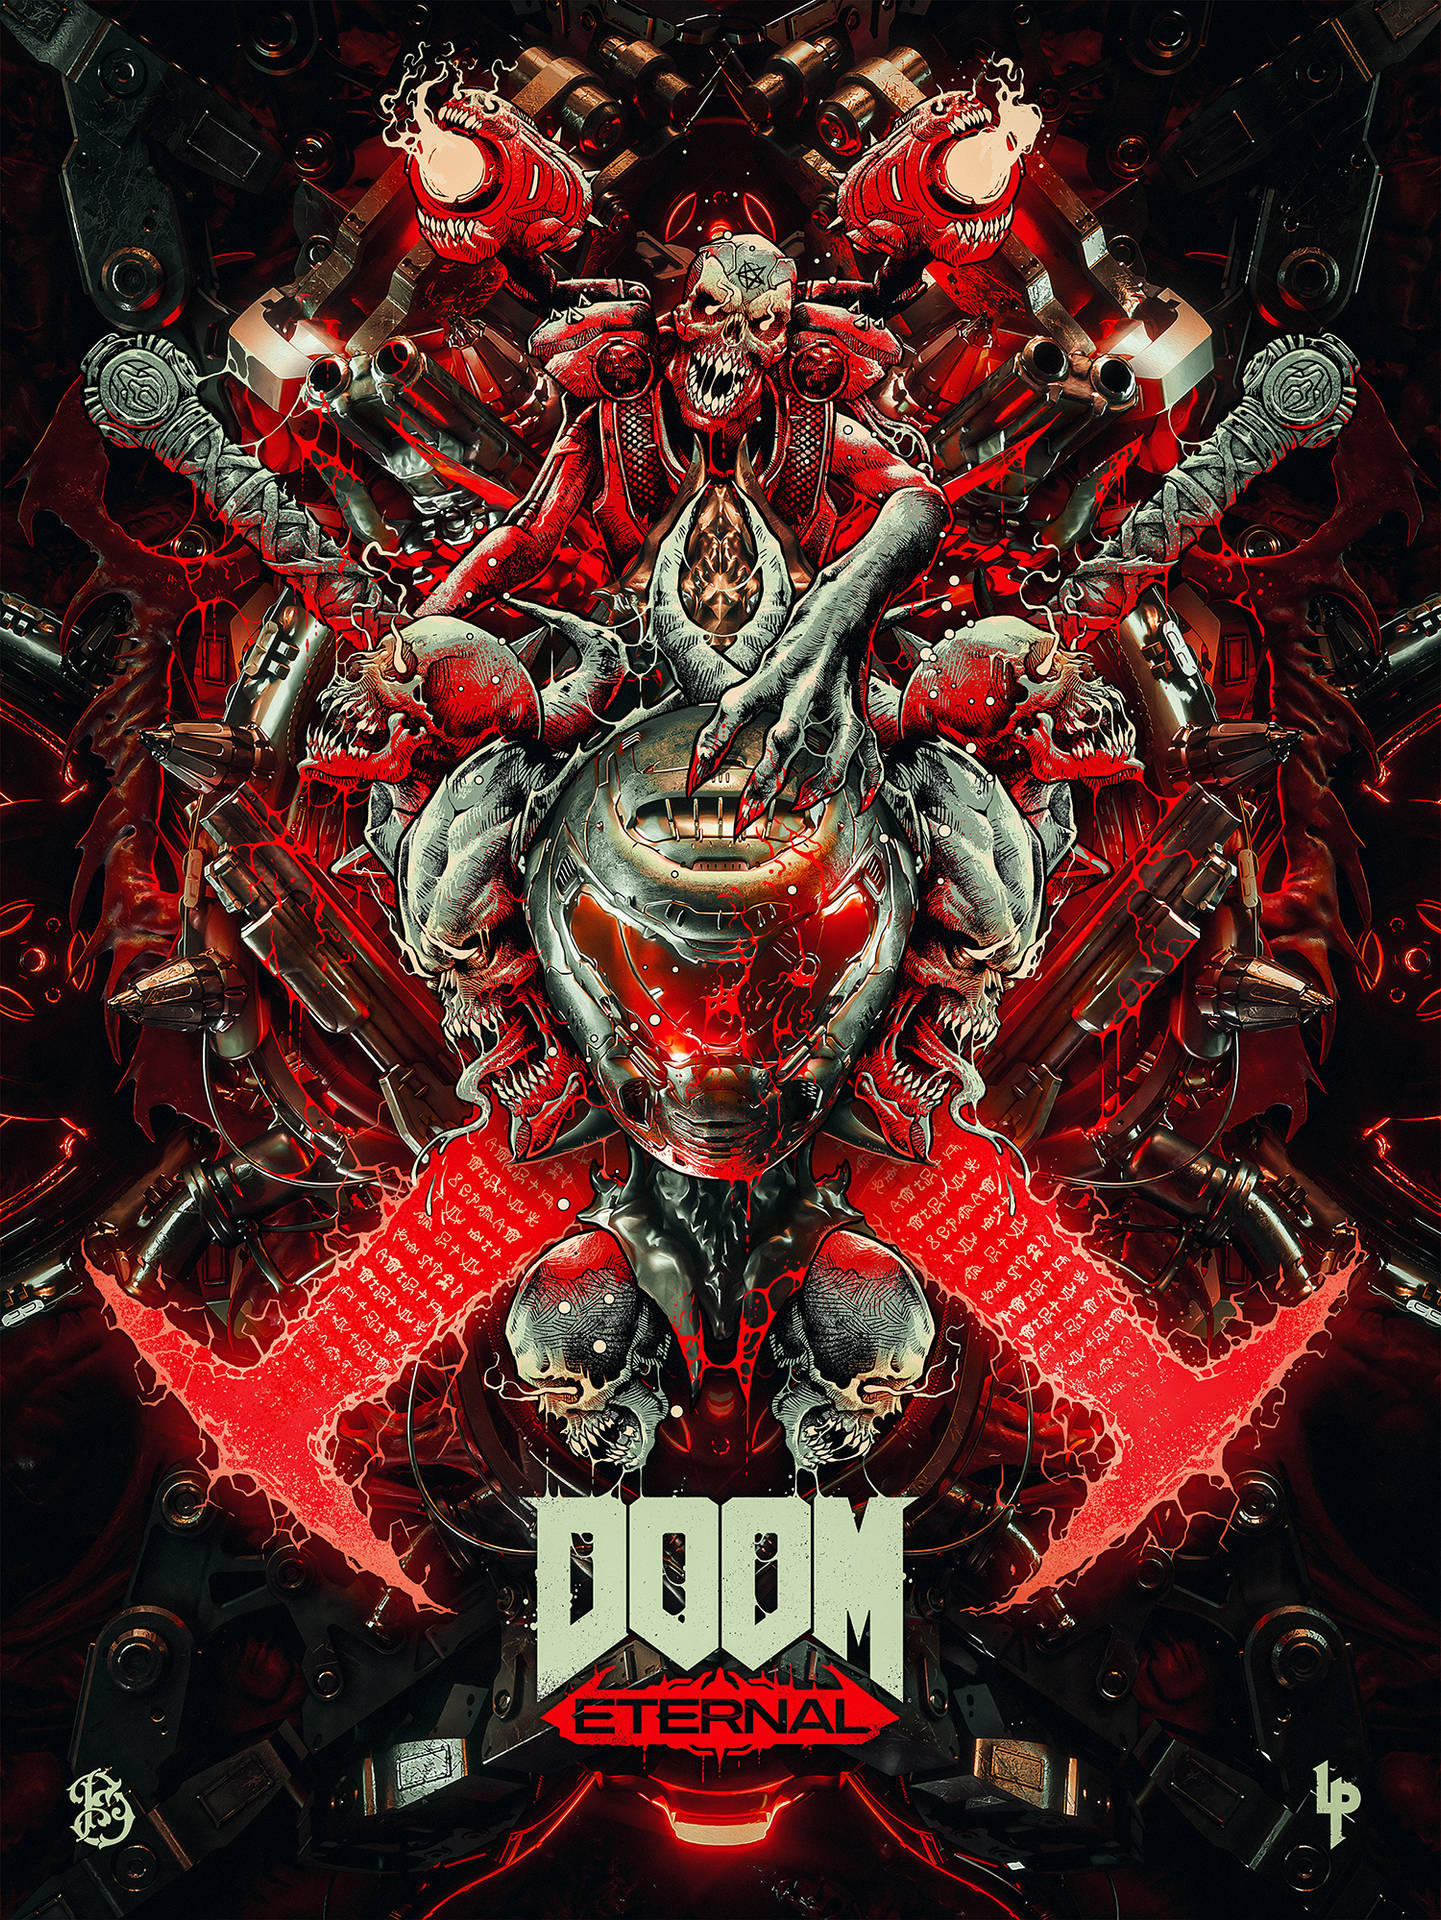 Loúltimo En Juegos: Doom Phone. Fondo de pantalla